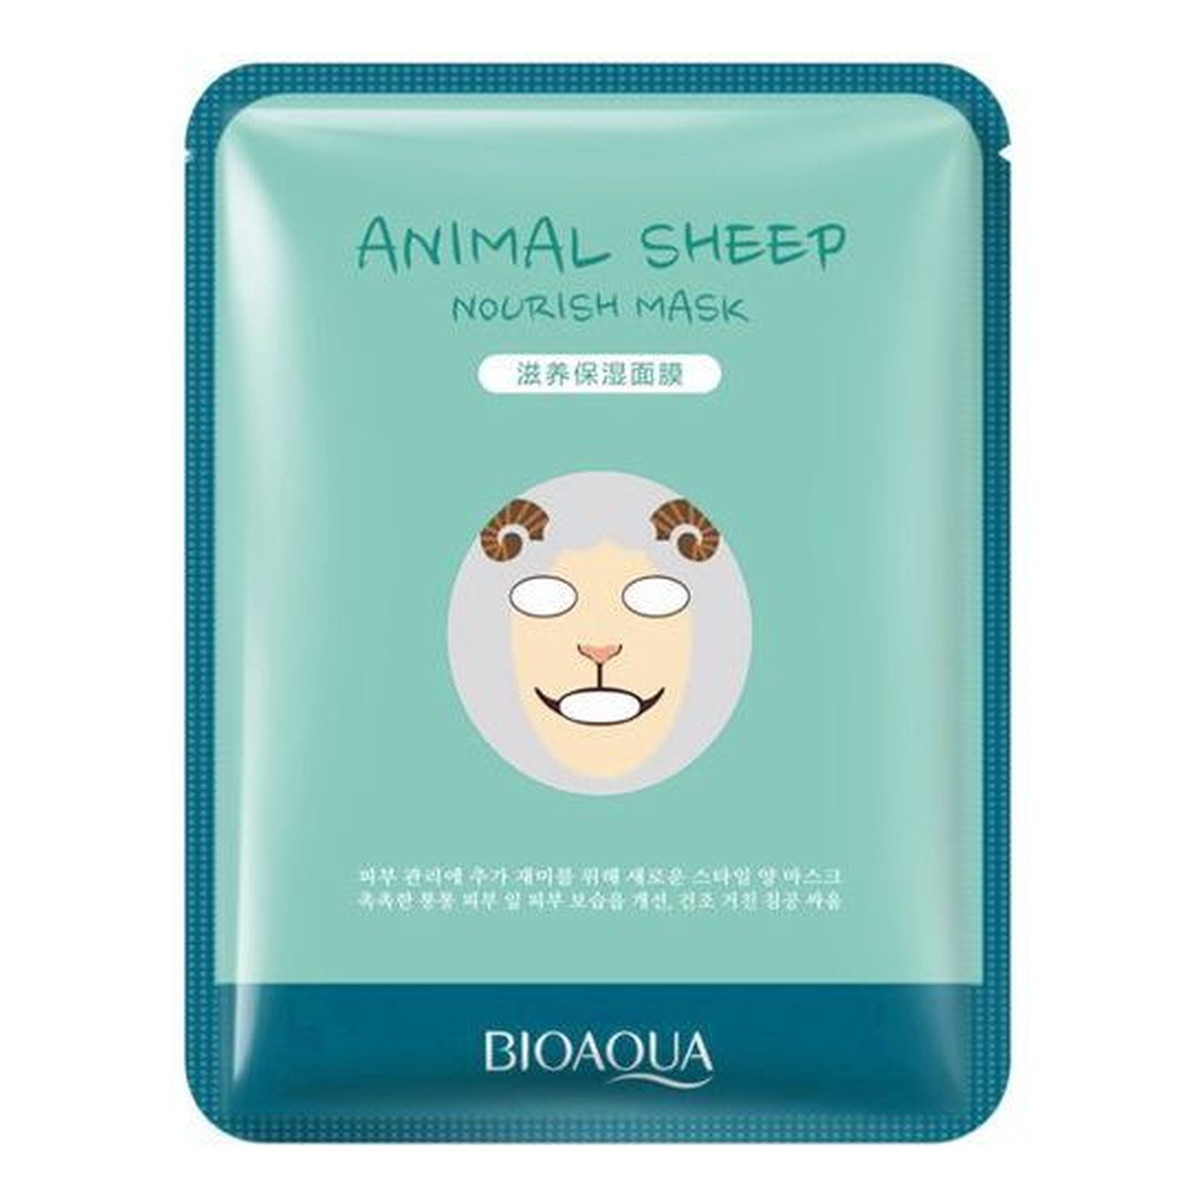 Bioaqua Animal Sheep Nourish Mask Nawilżająca Maska w Płacie Z Wizerunkiem Owcy 30g